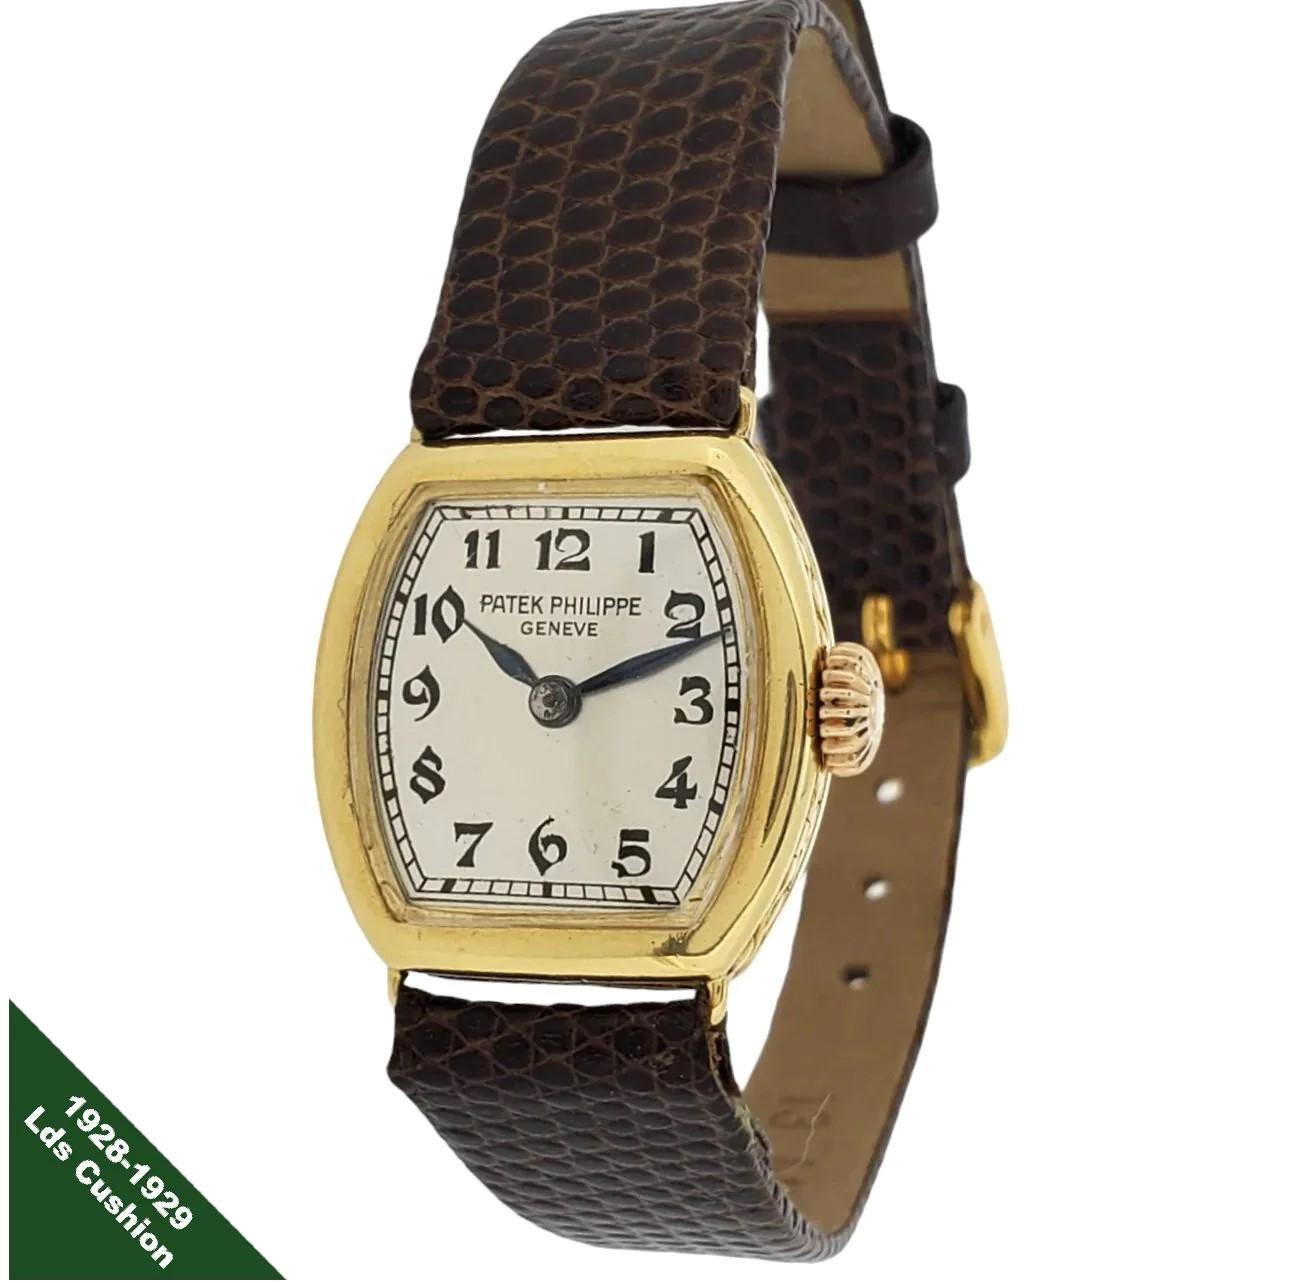 Patek Philippe 1928-1929 Early Cushion Ladies Watch ;  Réalisée en or jaune 18 carats, elle mesure 21 x 21 mm et possède un cadran argenté, des chiffres Breguet noirs et des aiguilles en acier bleu.  La montre est équipée d'un mouvement à remontage